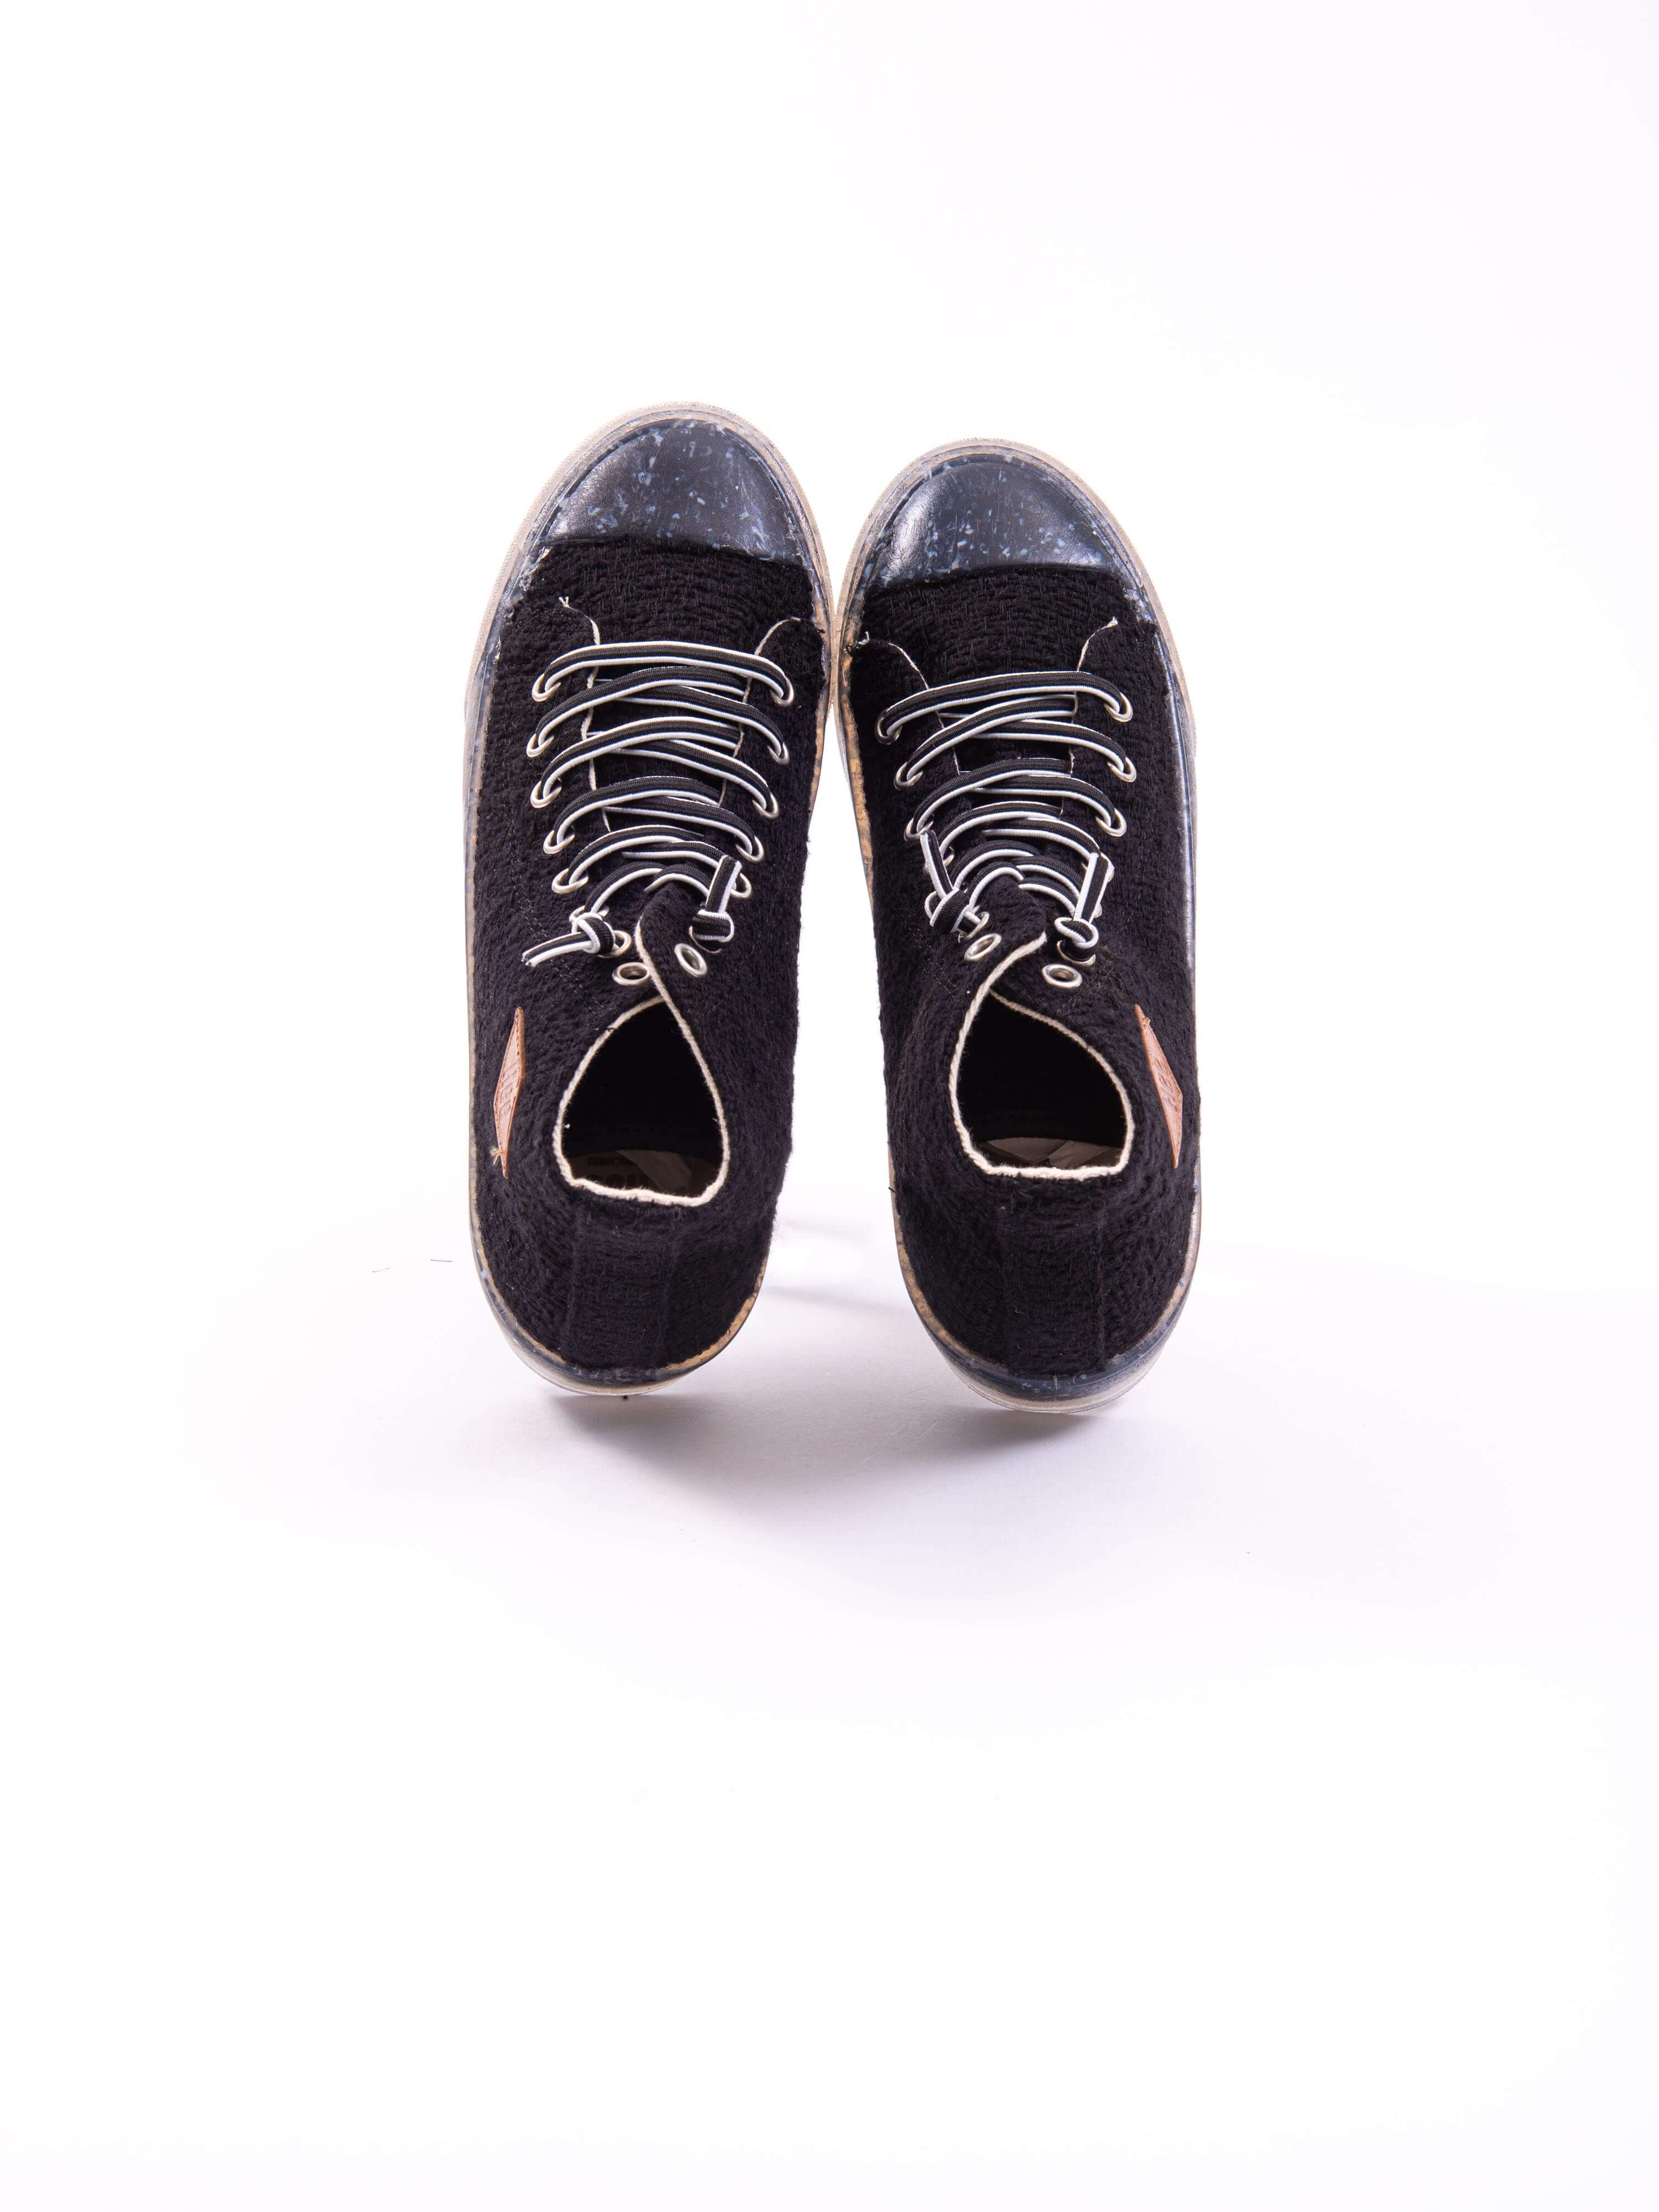 Crystal Sneakers Black